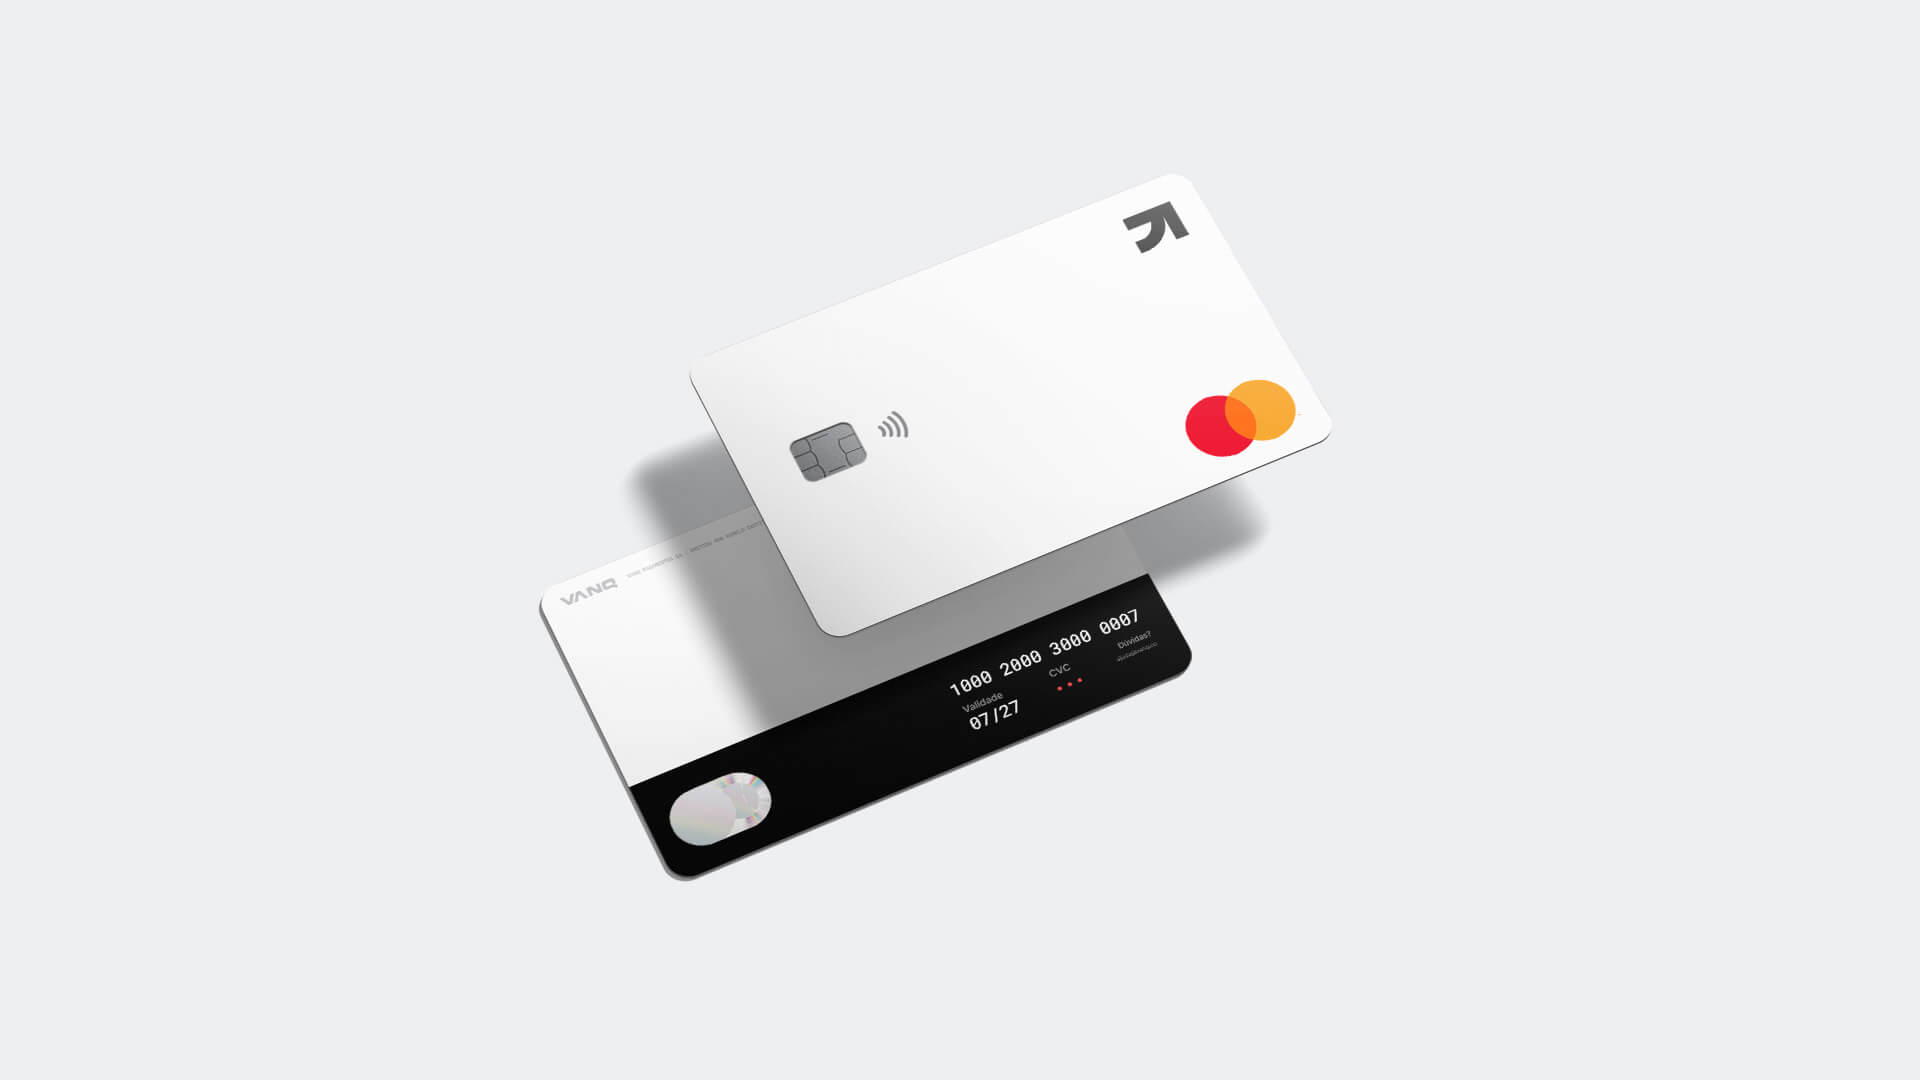 Telefone celular na mão esquerda com a tela de pagamentos combinados mostrando a configuração de cobrança em cada cartão do usuário.